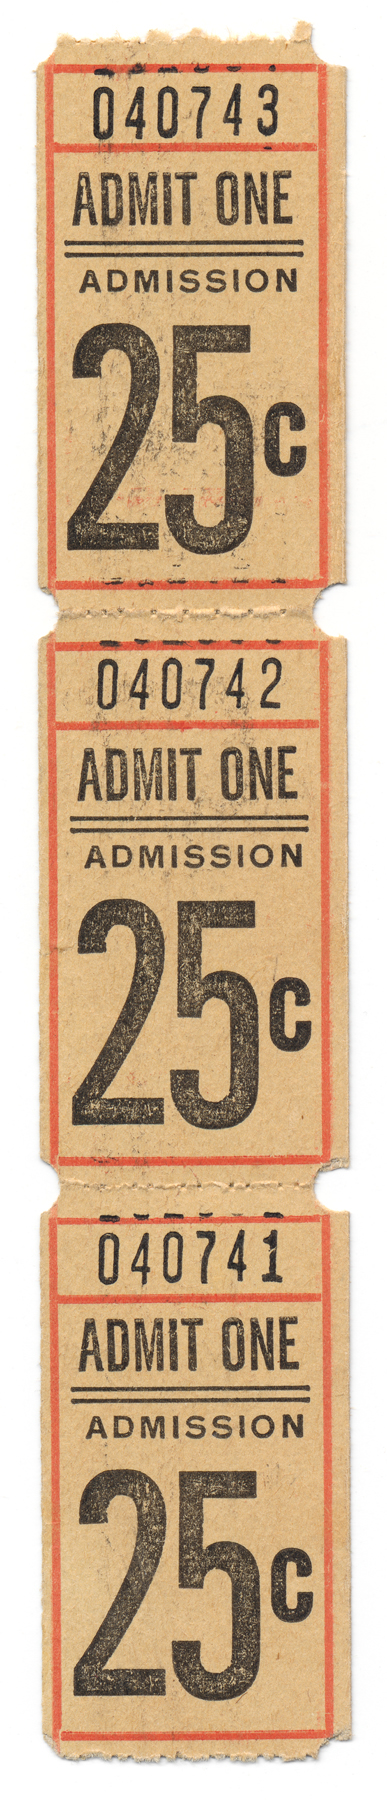 Vintage admit one ticket x3 photo